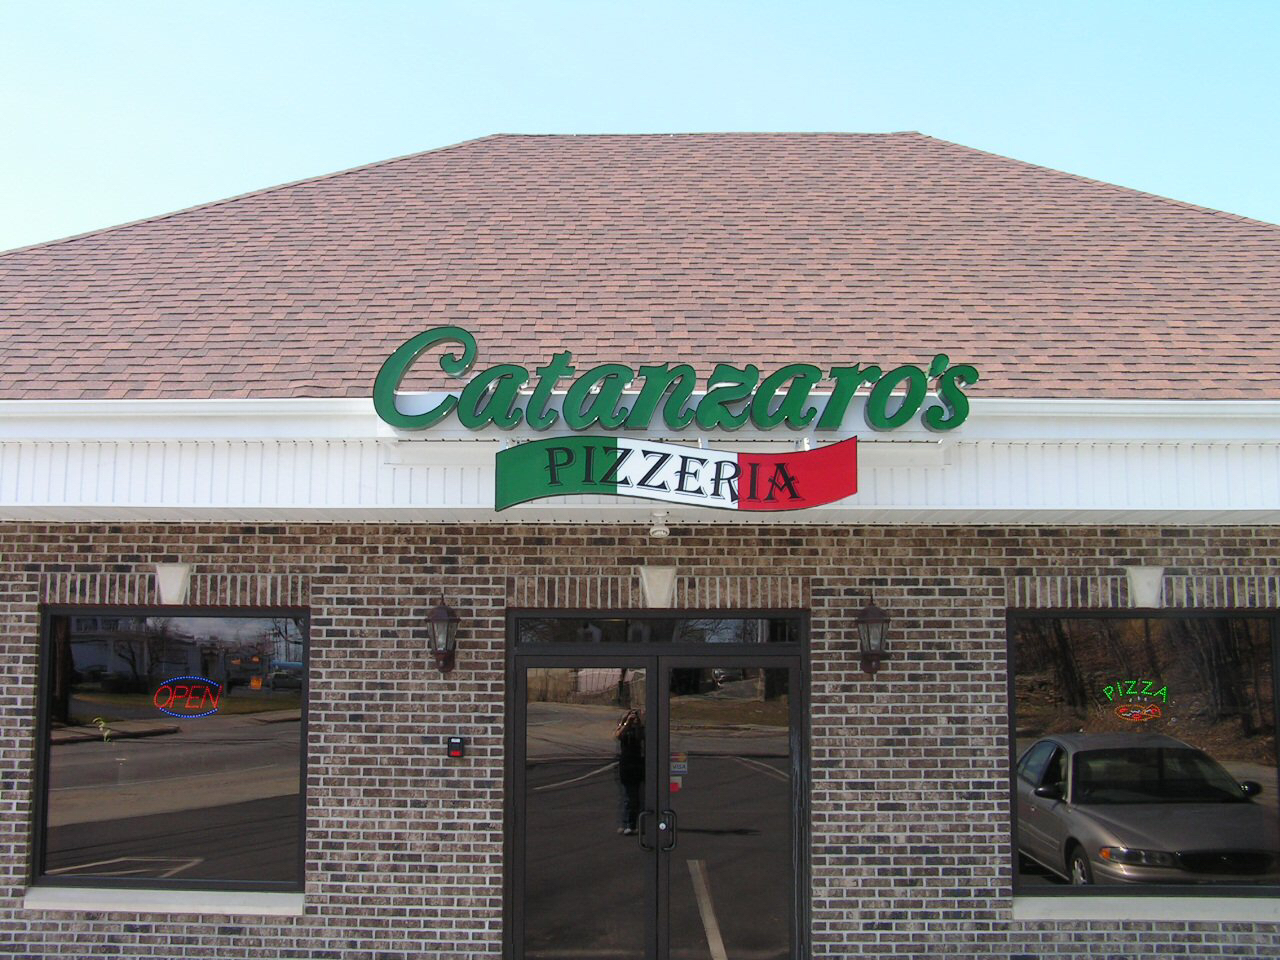 Catanzaro's Pizzeria Cranston